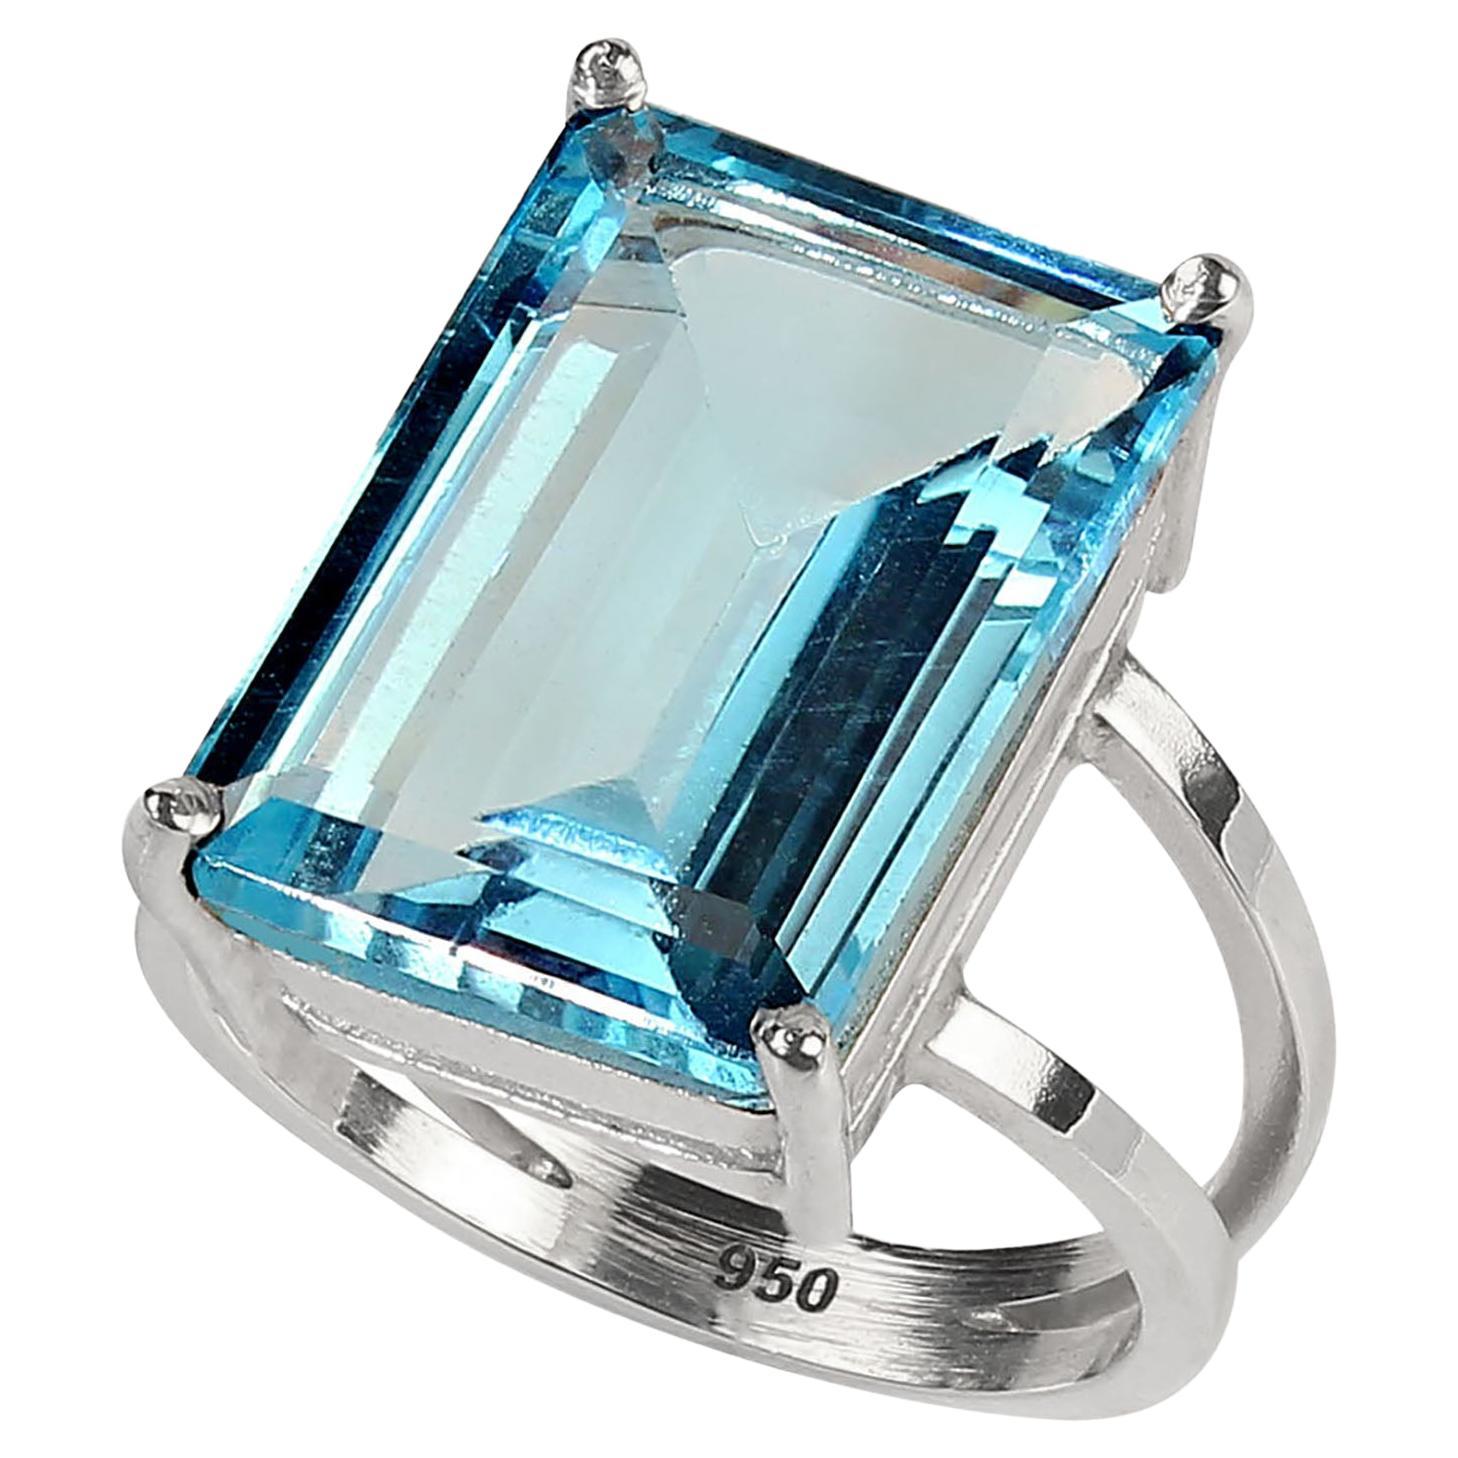 Aufregende 16Ct Smaragdschliff Sky Blue Topaz in Sterling Silber Ring. Dieser handgefertigte Ring ist perfekt geschaffen, um diesen funkelnden 18x13MM Sky Blue Topaz zu präsentieren.  Dieser Ring wird im Studio des Lieblingsverkäufers in Belo